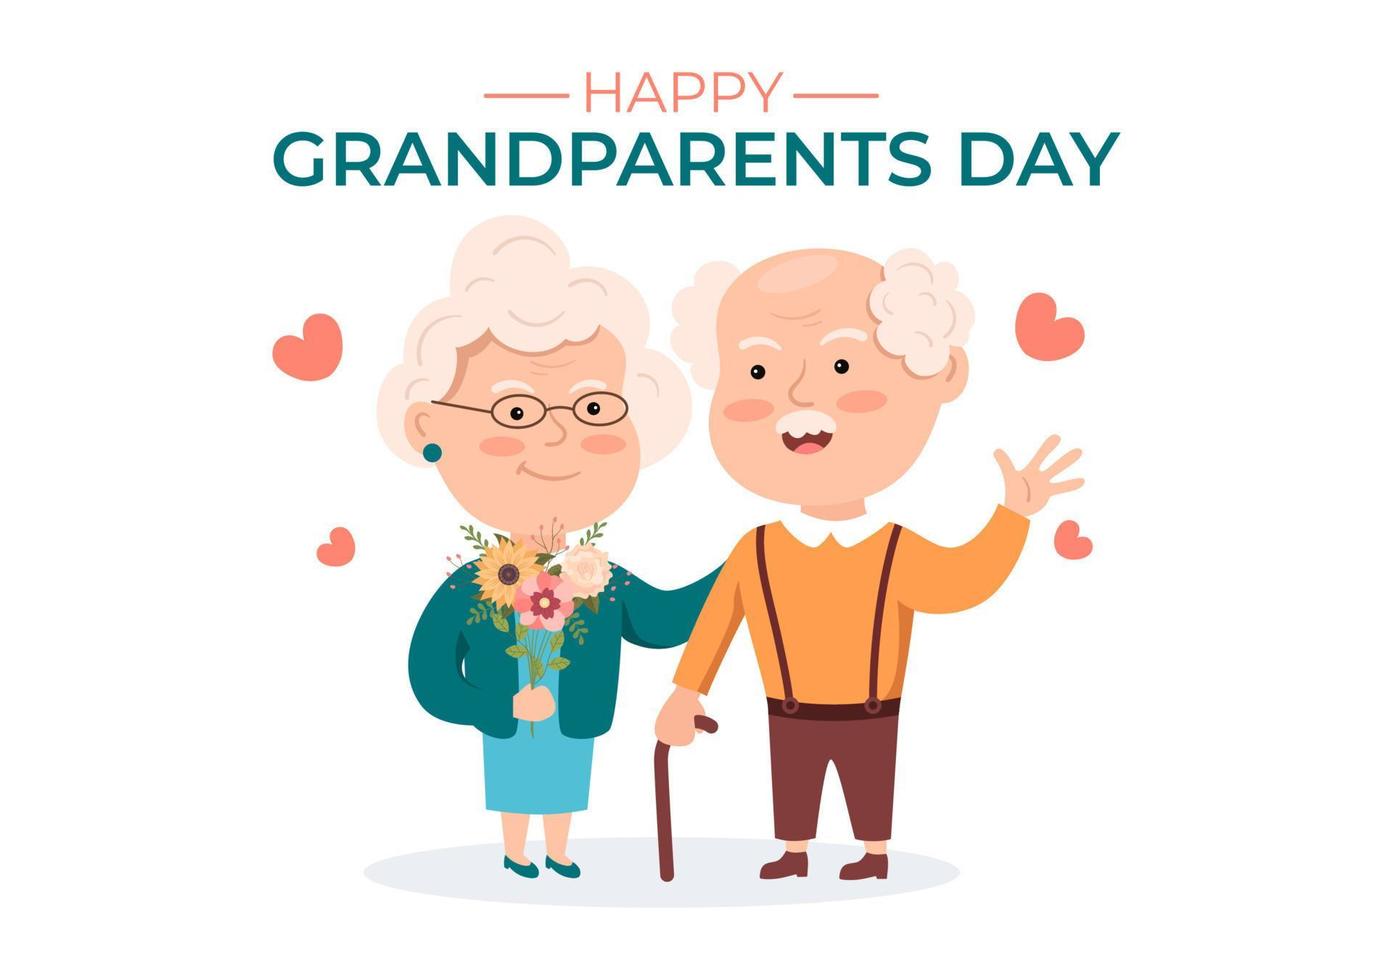 feliz día de los abuelos linda ilustración de dibujos animados con pareja mayor, decoración de flores, abuelo y abuela en estilo plano para afiche o tarjeta de felicitación vector